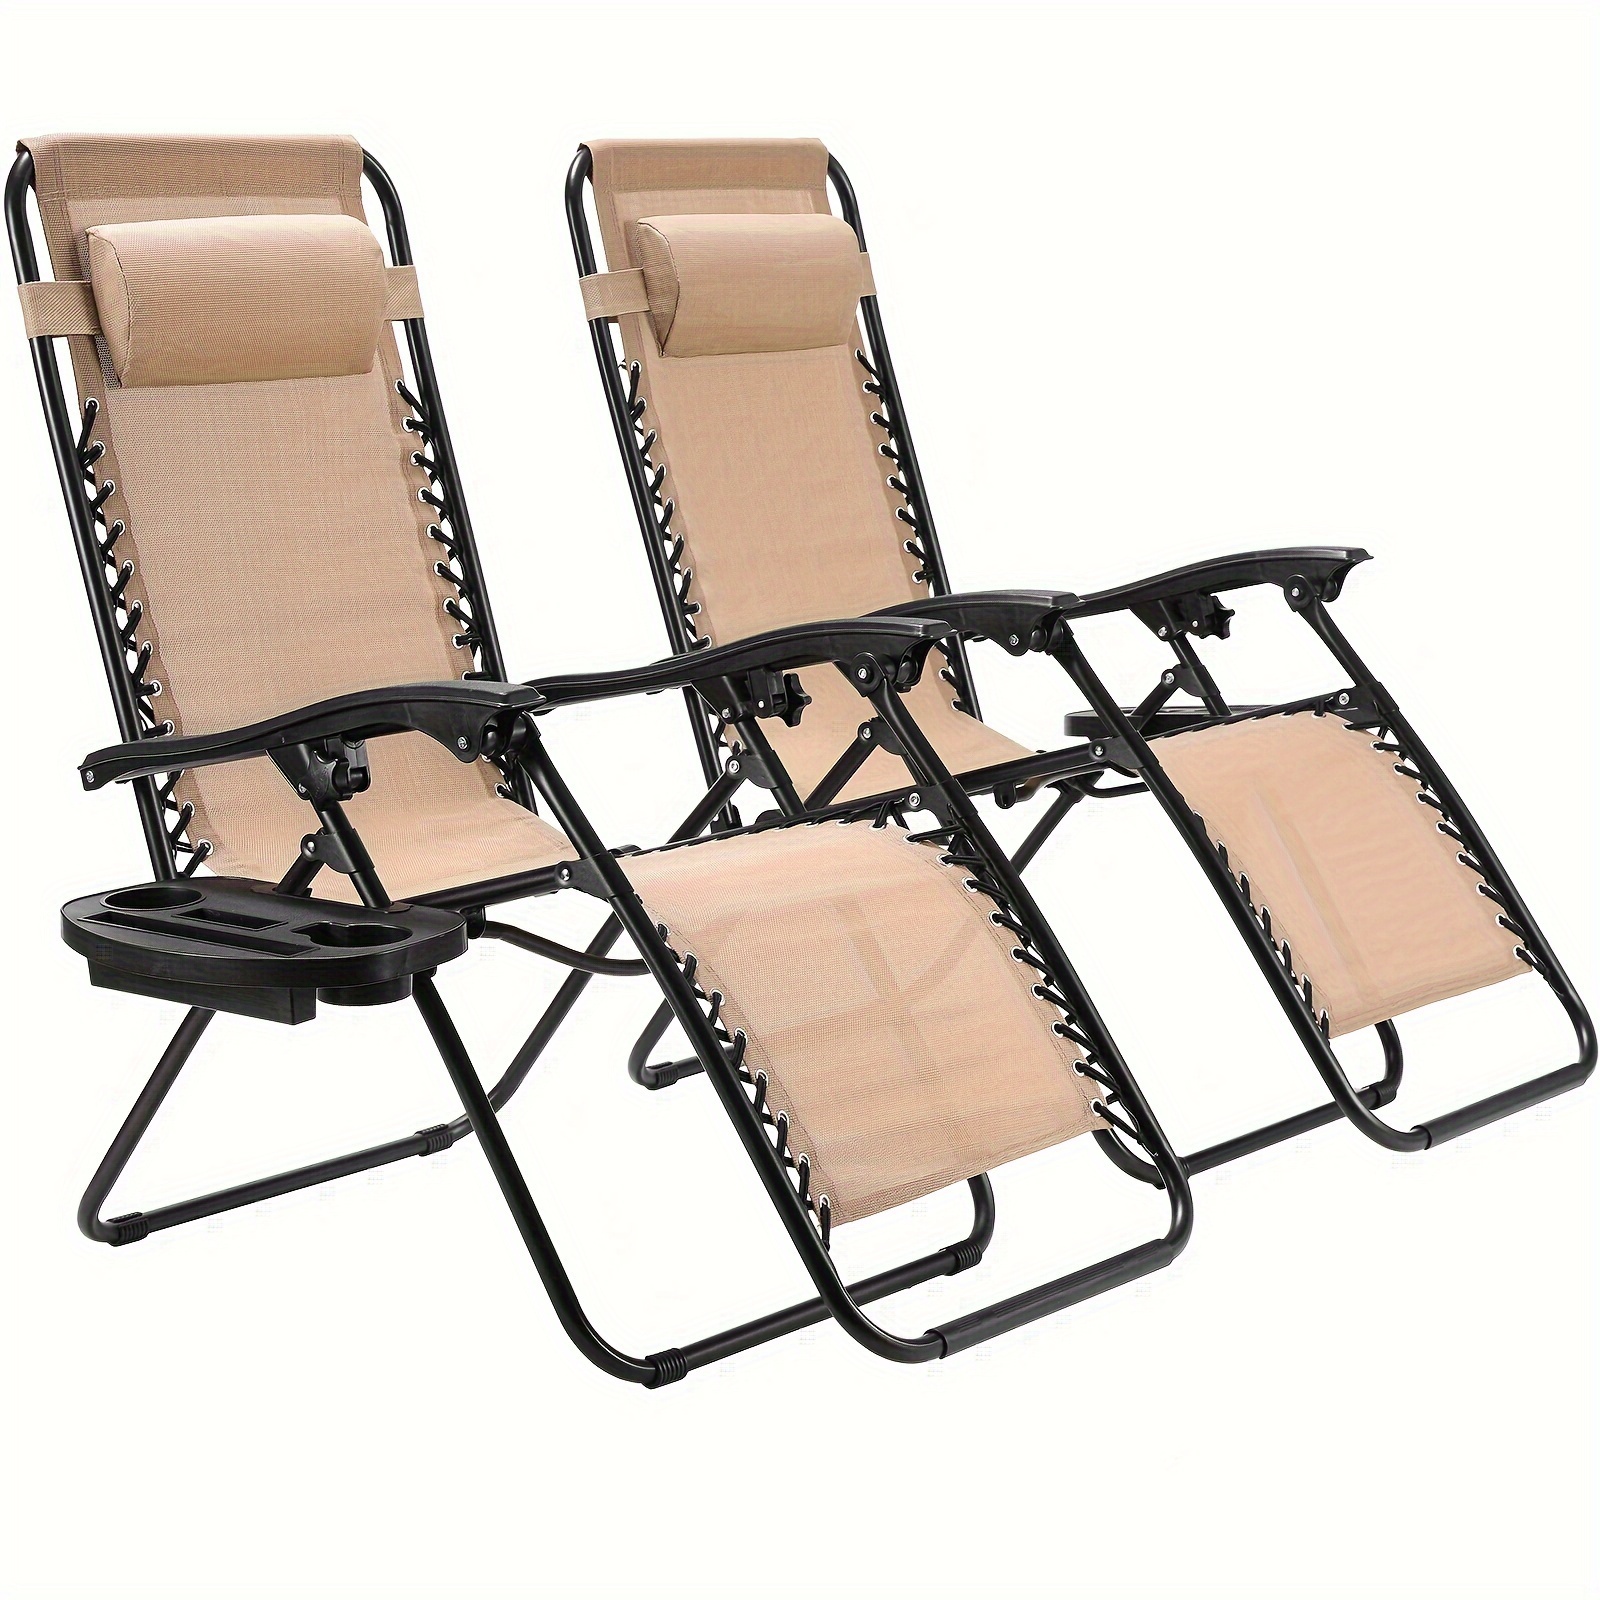 

Ensemble de 2 chaises longues pliables pour jardin extérieur, dossier réglable avec appuie-tête, chaise longue inclinable pour piscine, jardin, balcon, plage, pause déjeuner, beige